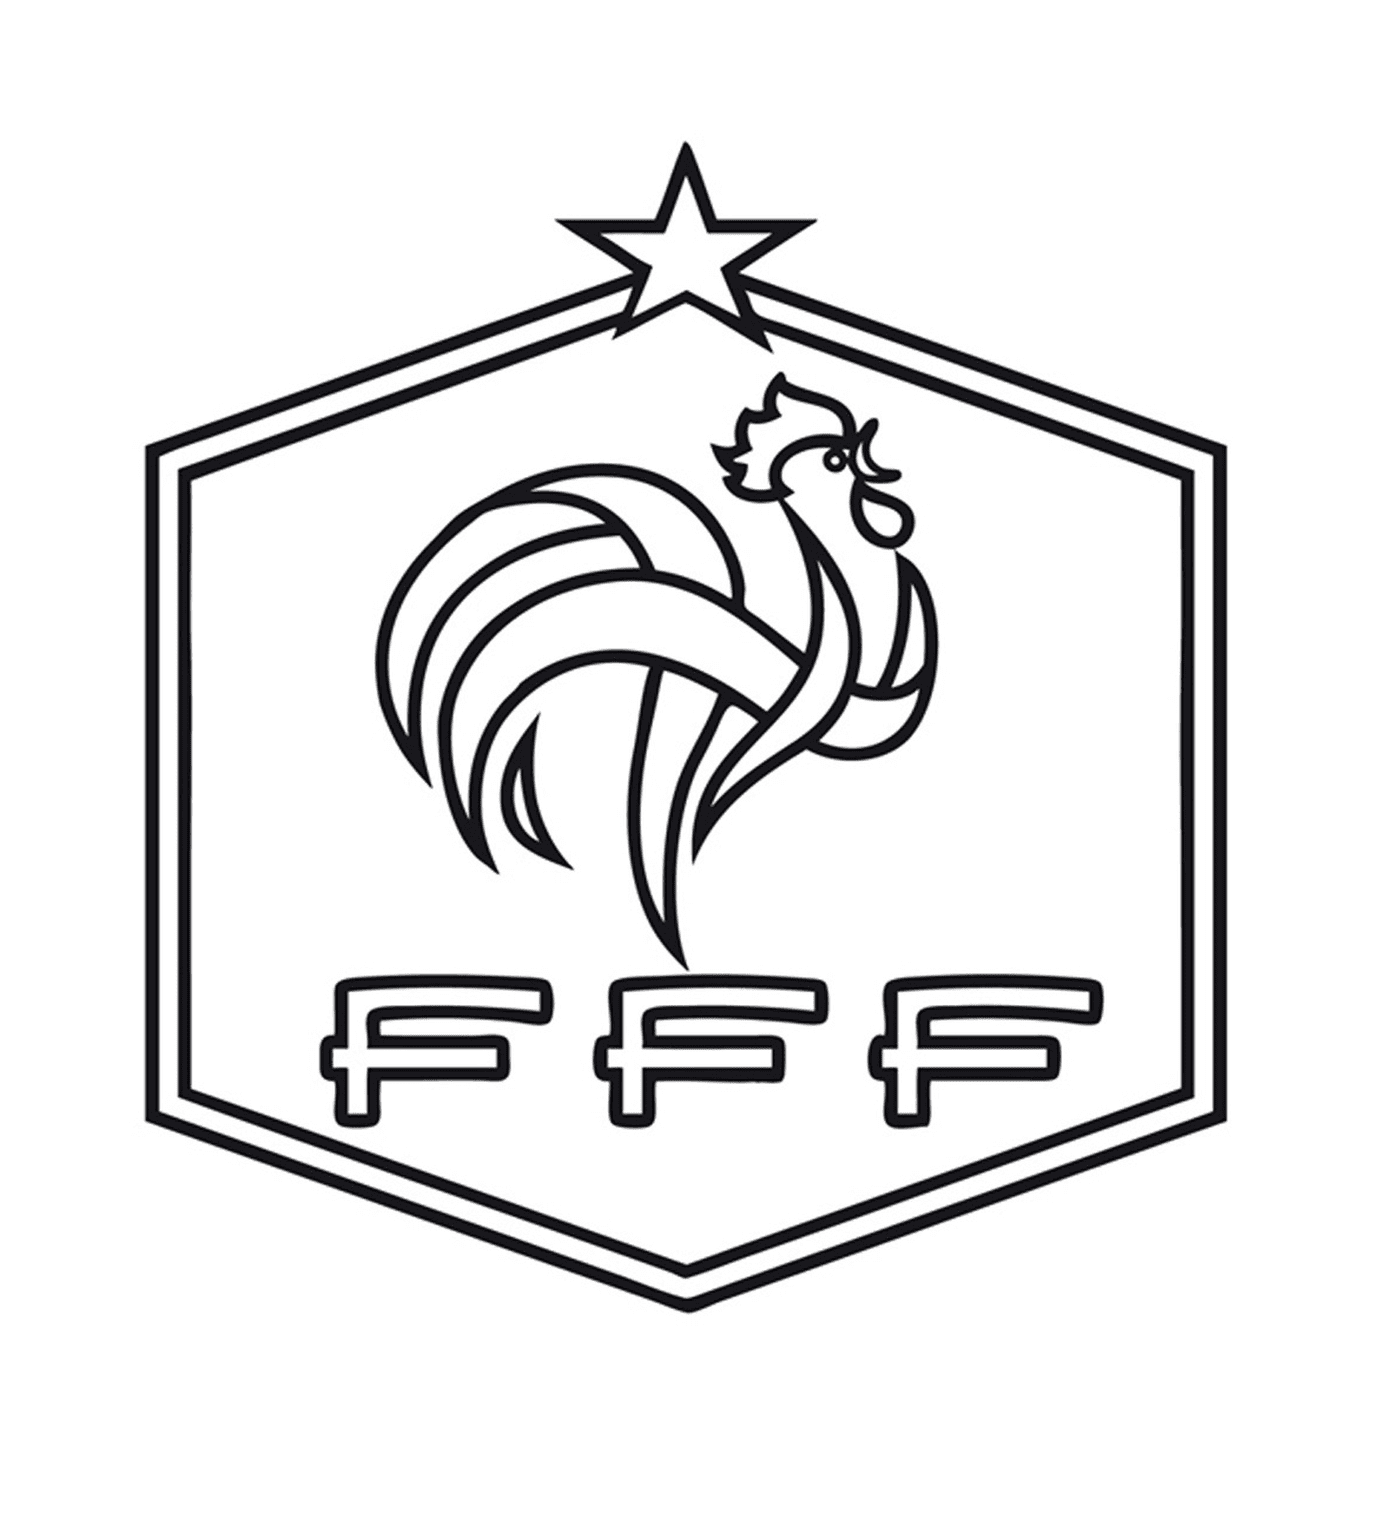  Fútbol en Francia, gallo y estrella 